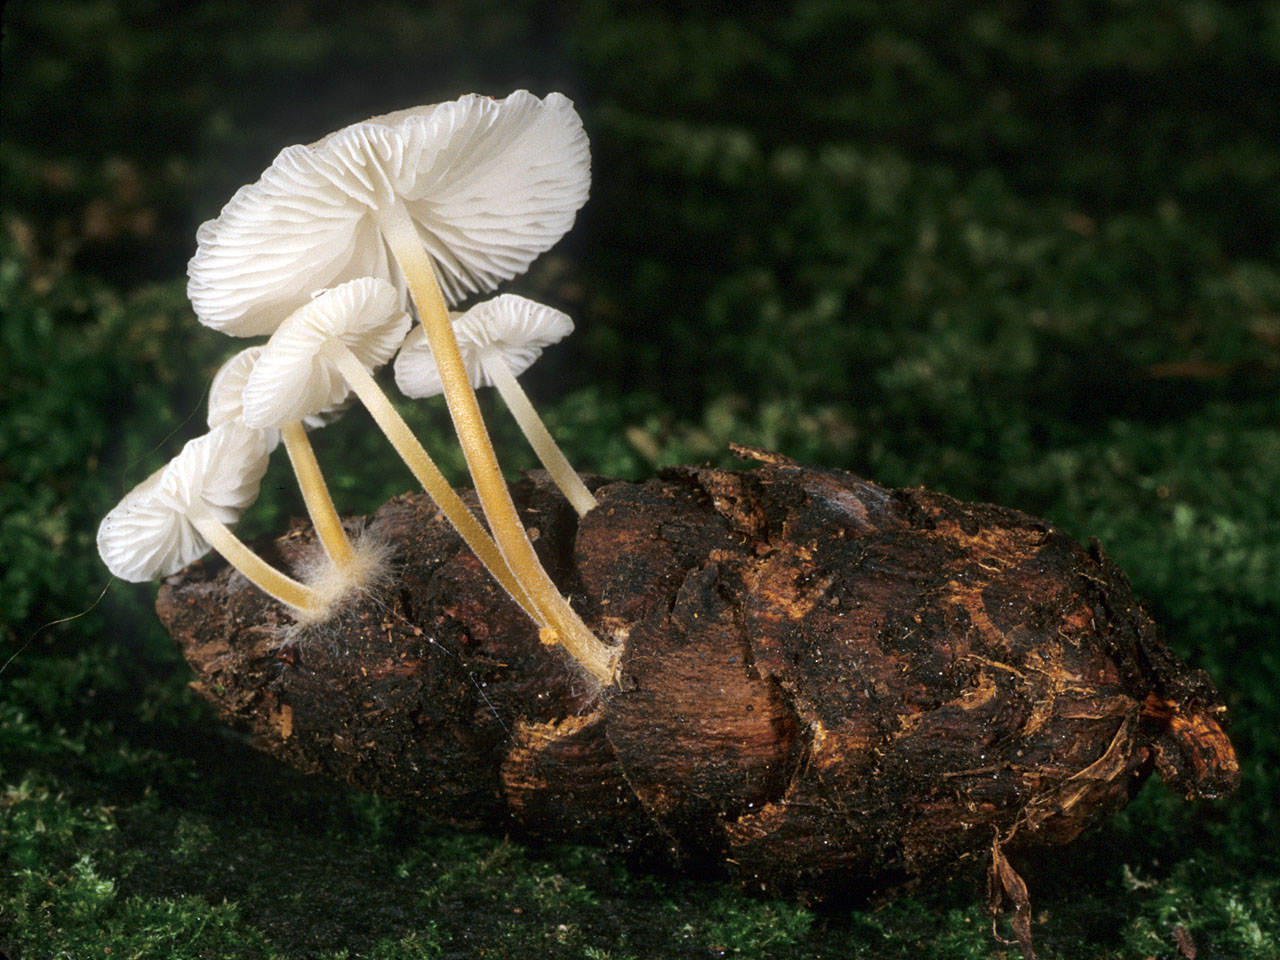 Весенние грибы: съедобные и несъедобные виды